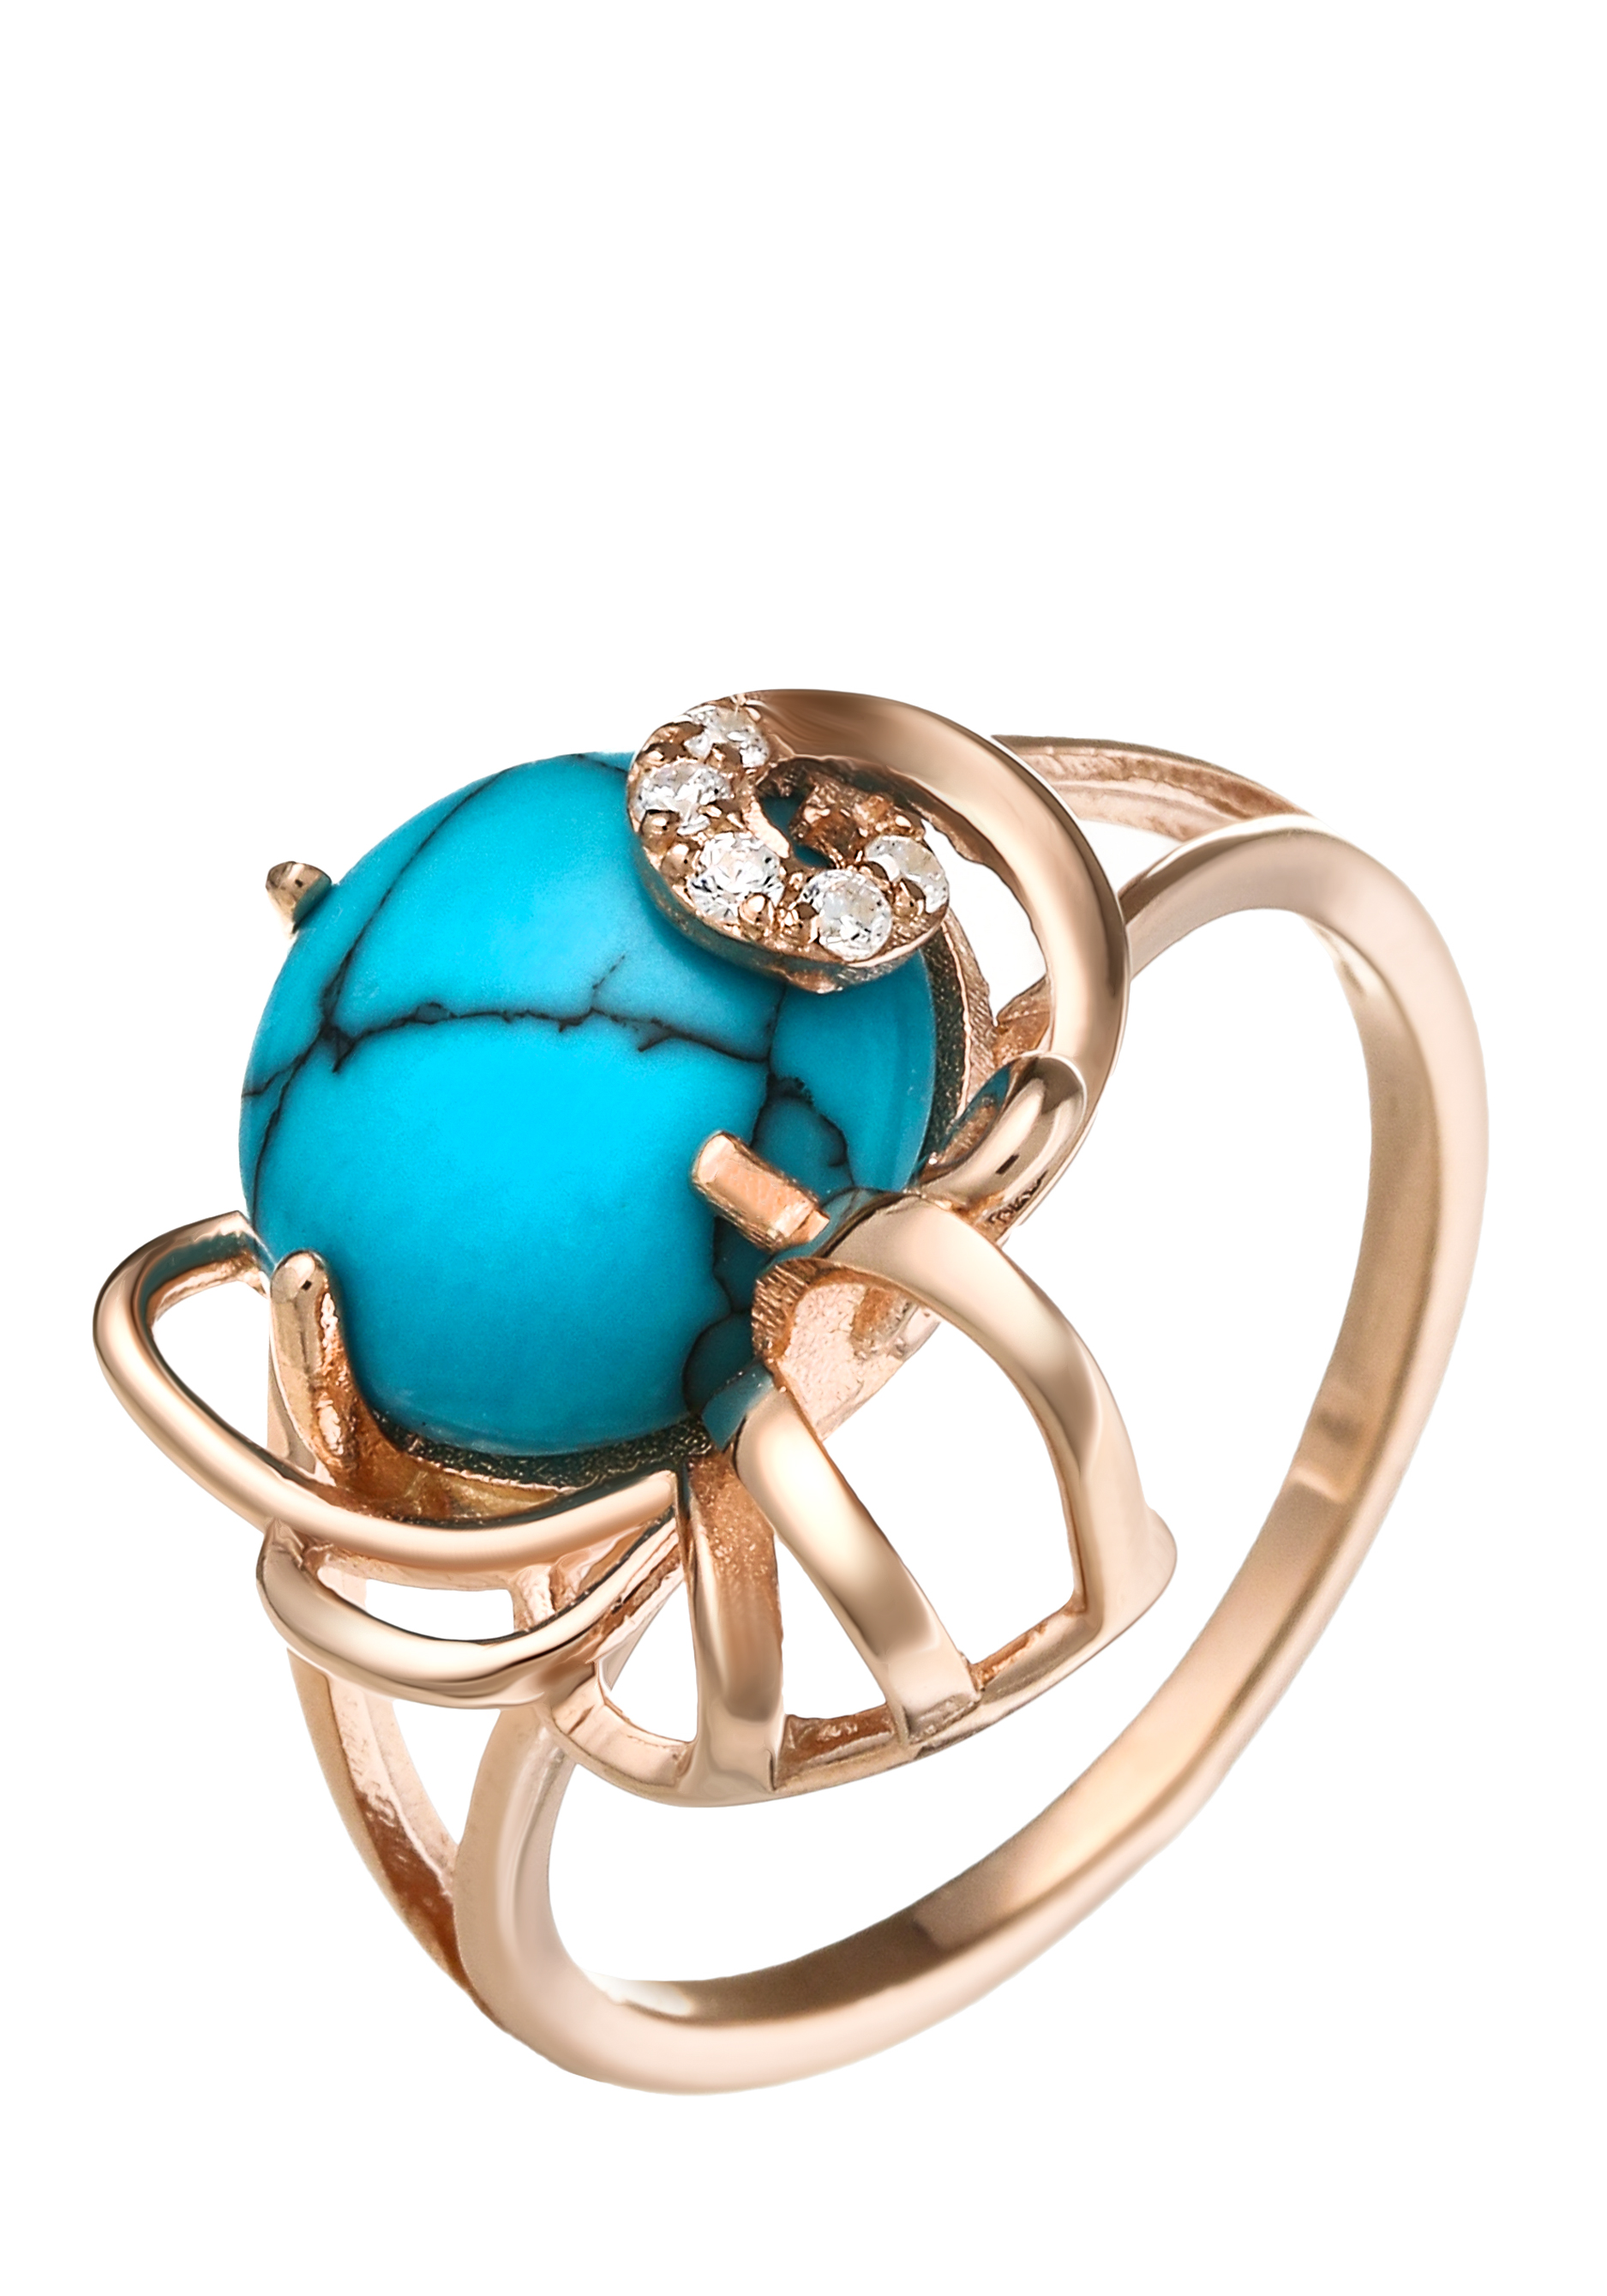 Кольцо серебряное "Эталон женственности" Бриллианит Серебряная линия, цвет голубой, размер 21 кластер - фото 1